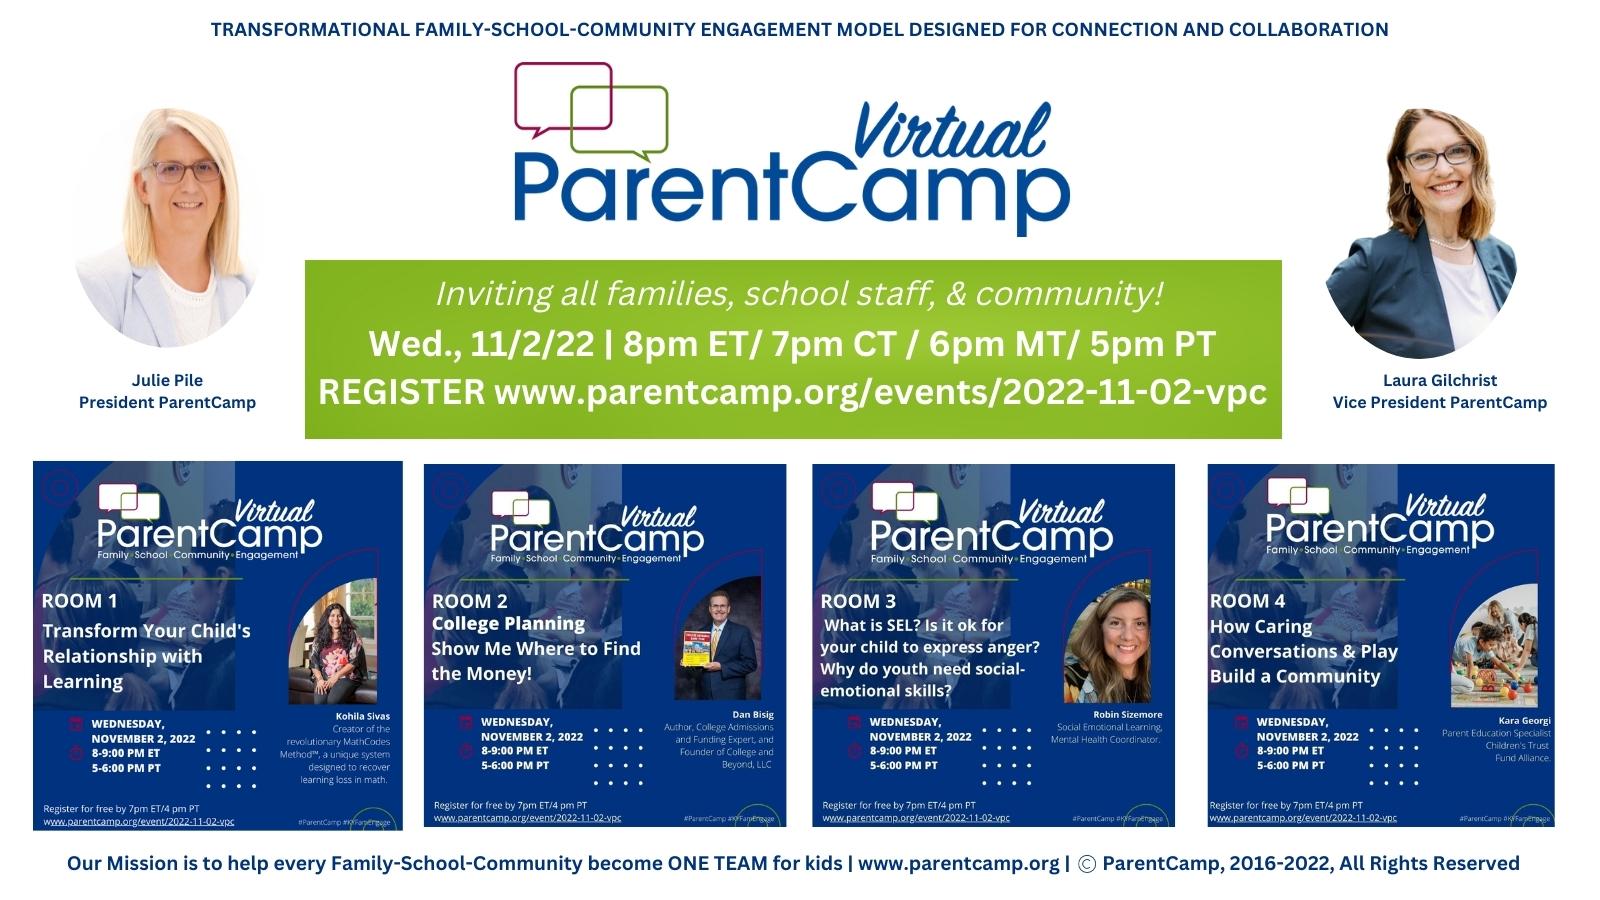 Virtual ParentCamp 11/2 at 8pm EST.